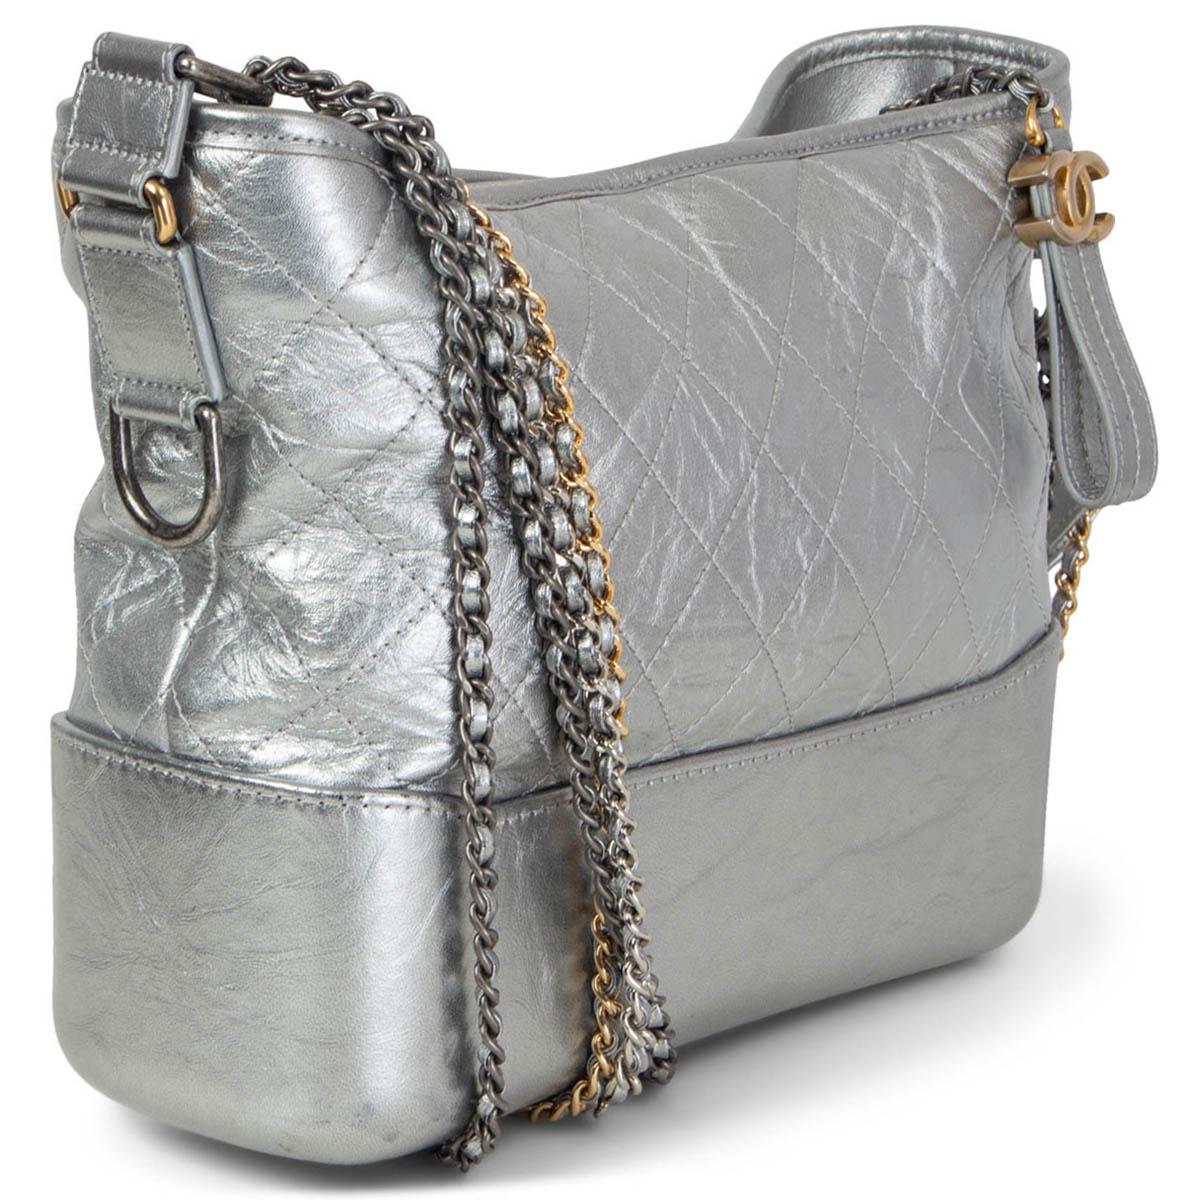 100% authentische Chanel Gabrielle Medium Hobo Bag aus metallischem, silberfarbenem, gealtertem Kalbsleder mit Doppelketten-Schulterriemen aus goldfarbenem, silberfarbenem und rutheniumfarbenem Metall. Wird mit einem CC-Reißverschluss an der